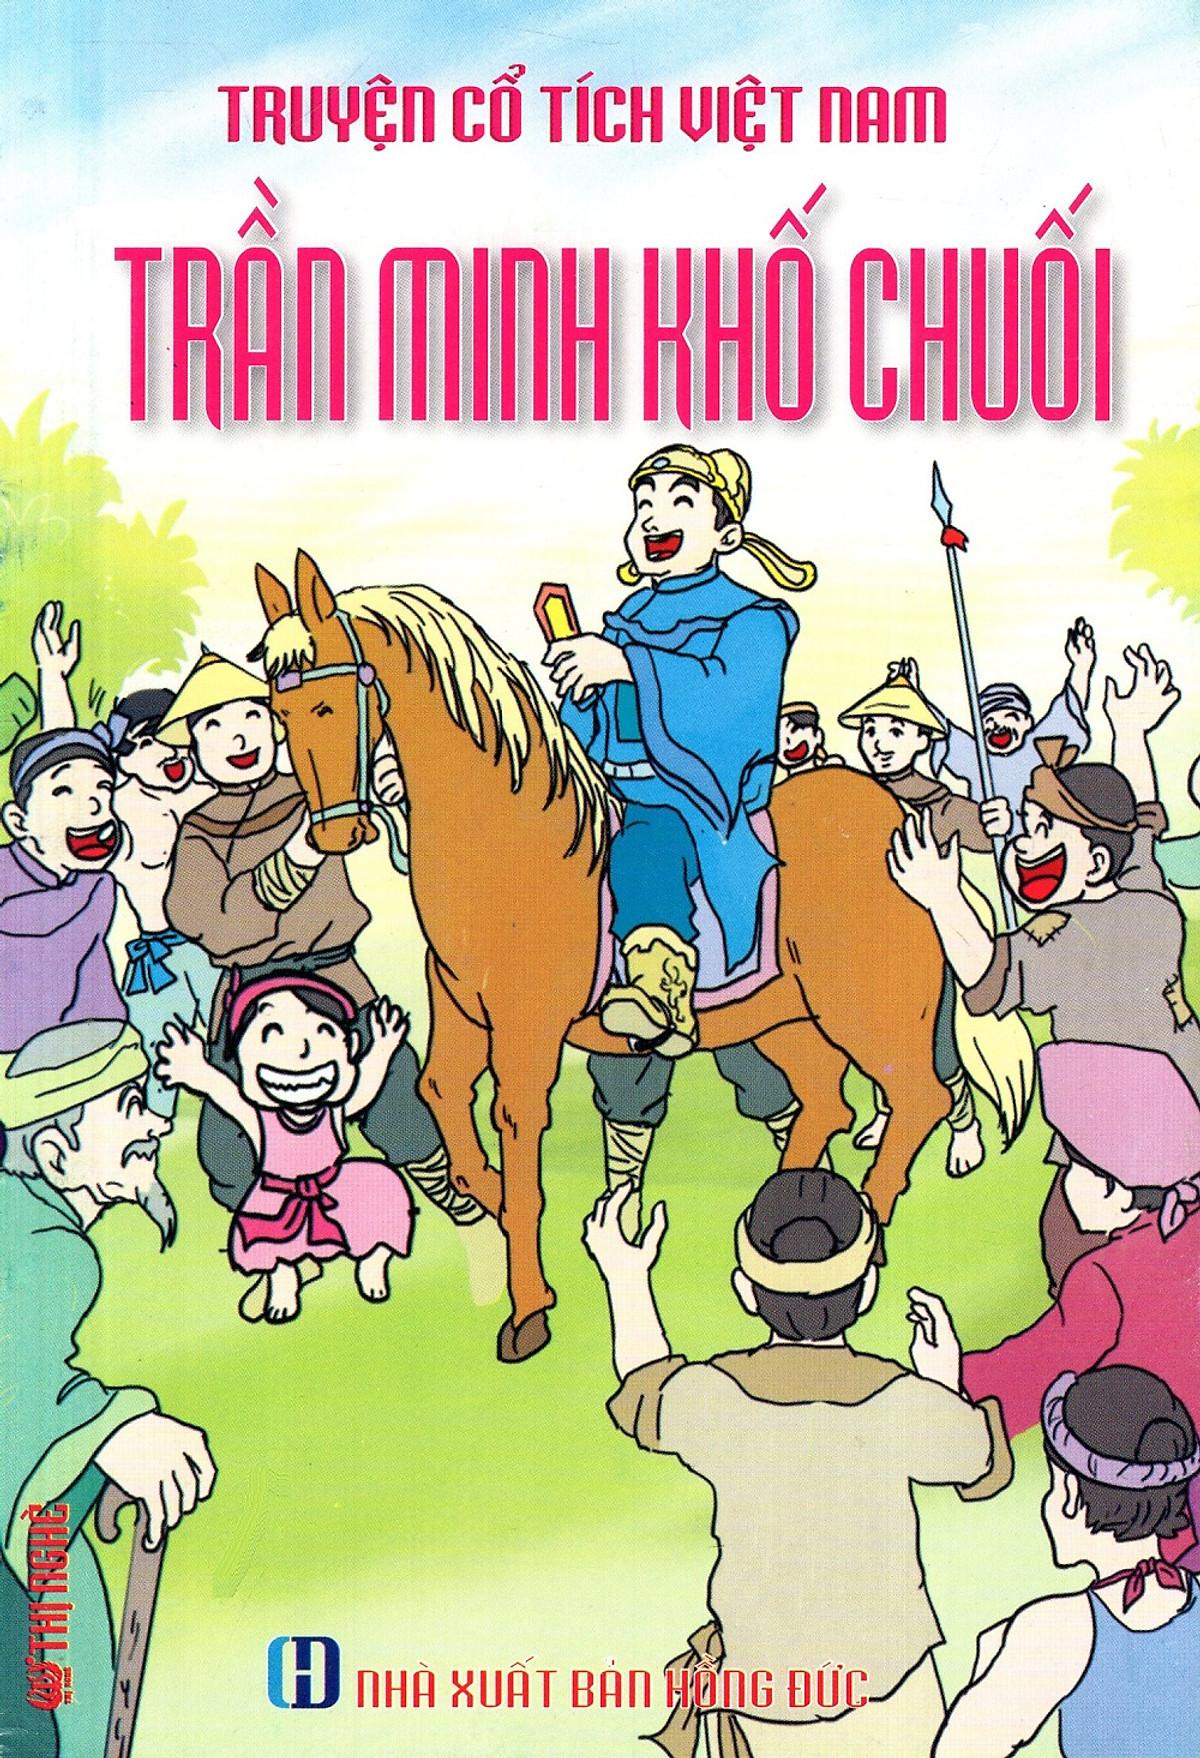 Truyện Cổ Tích Việt Nam - Trần Minh Khố Chuối